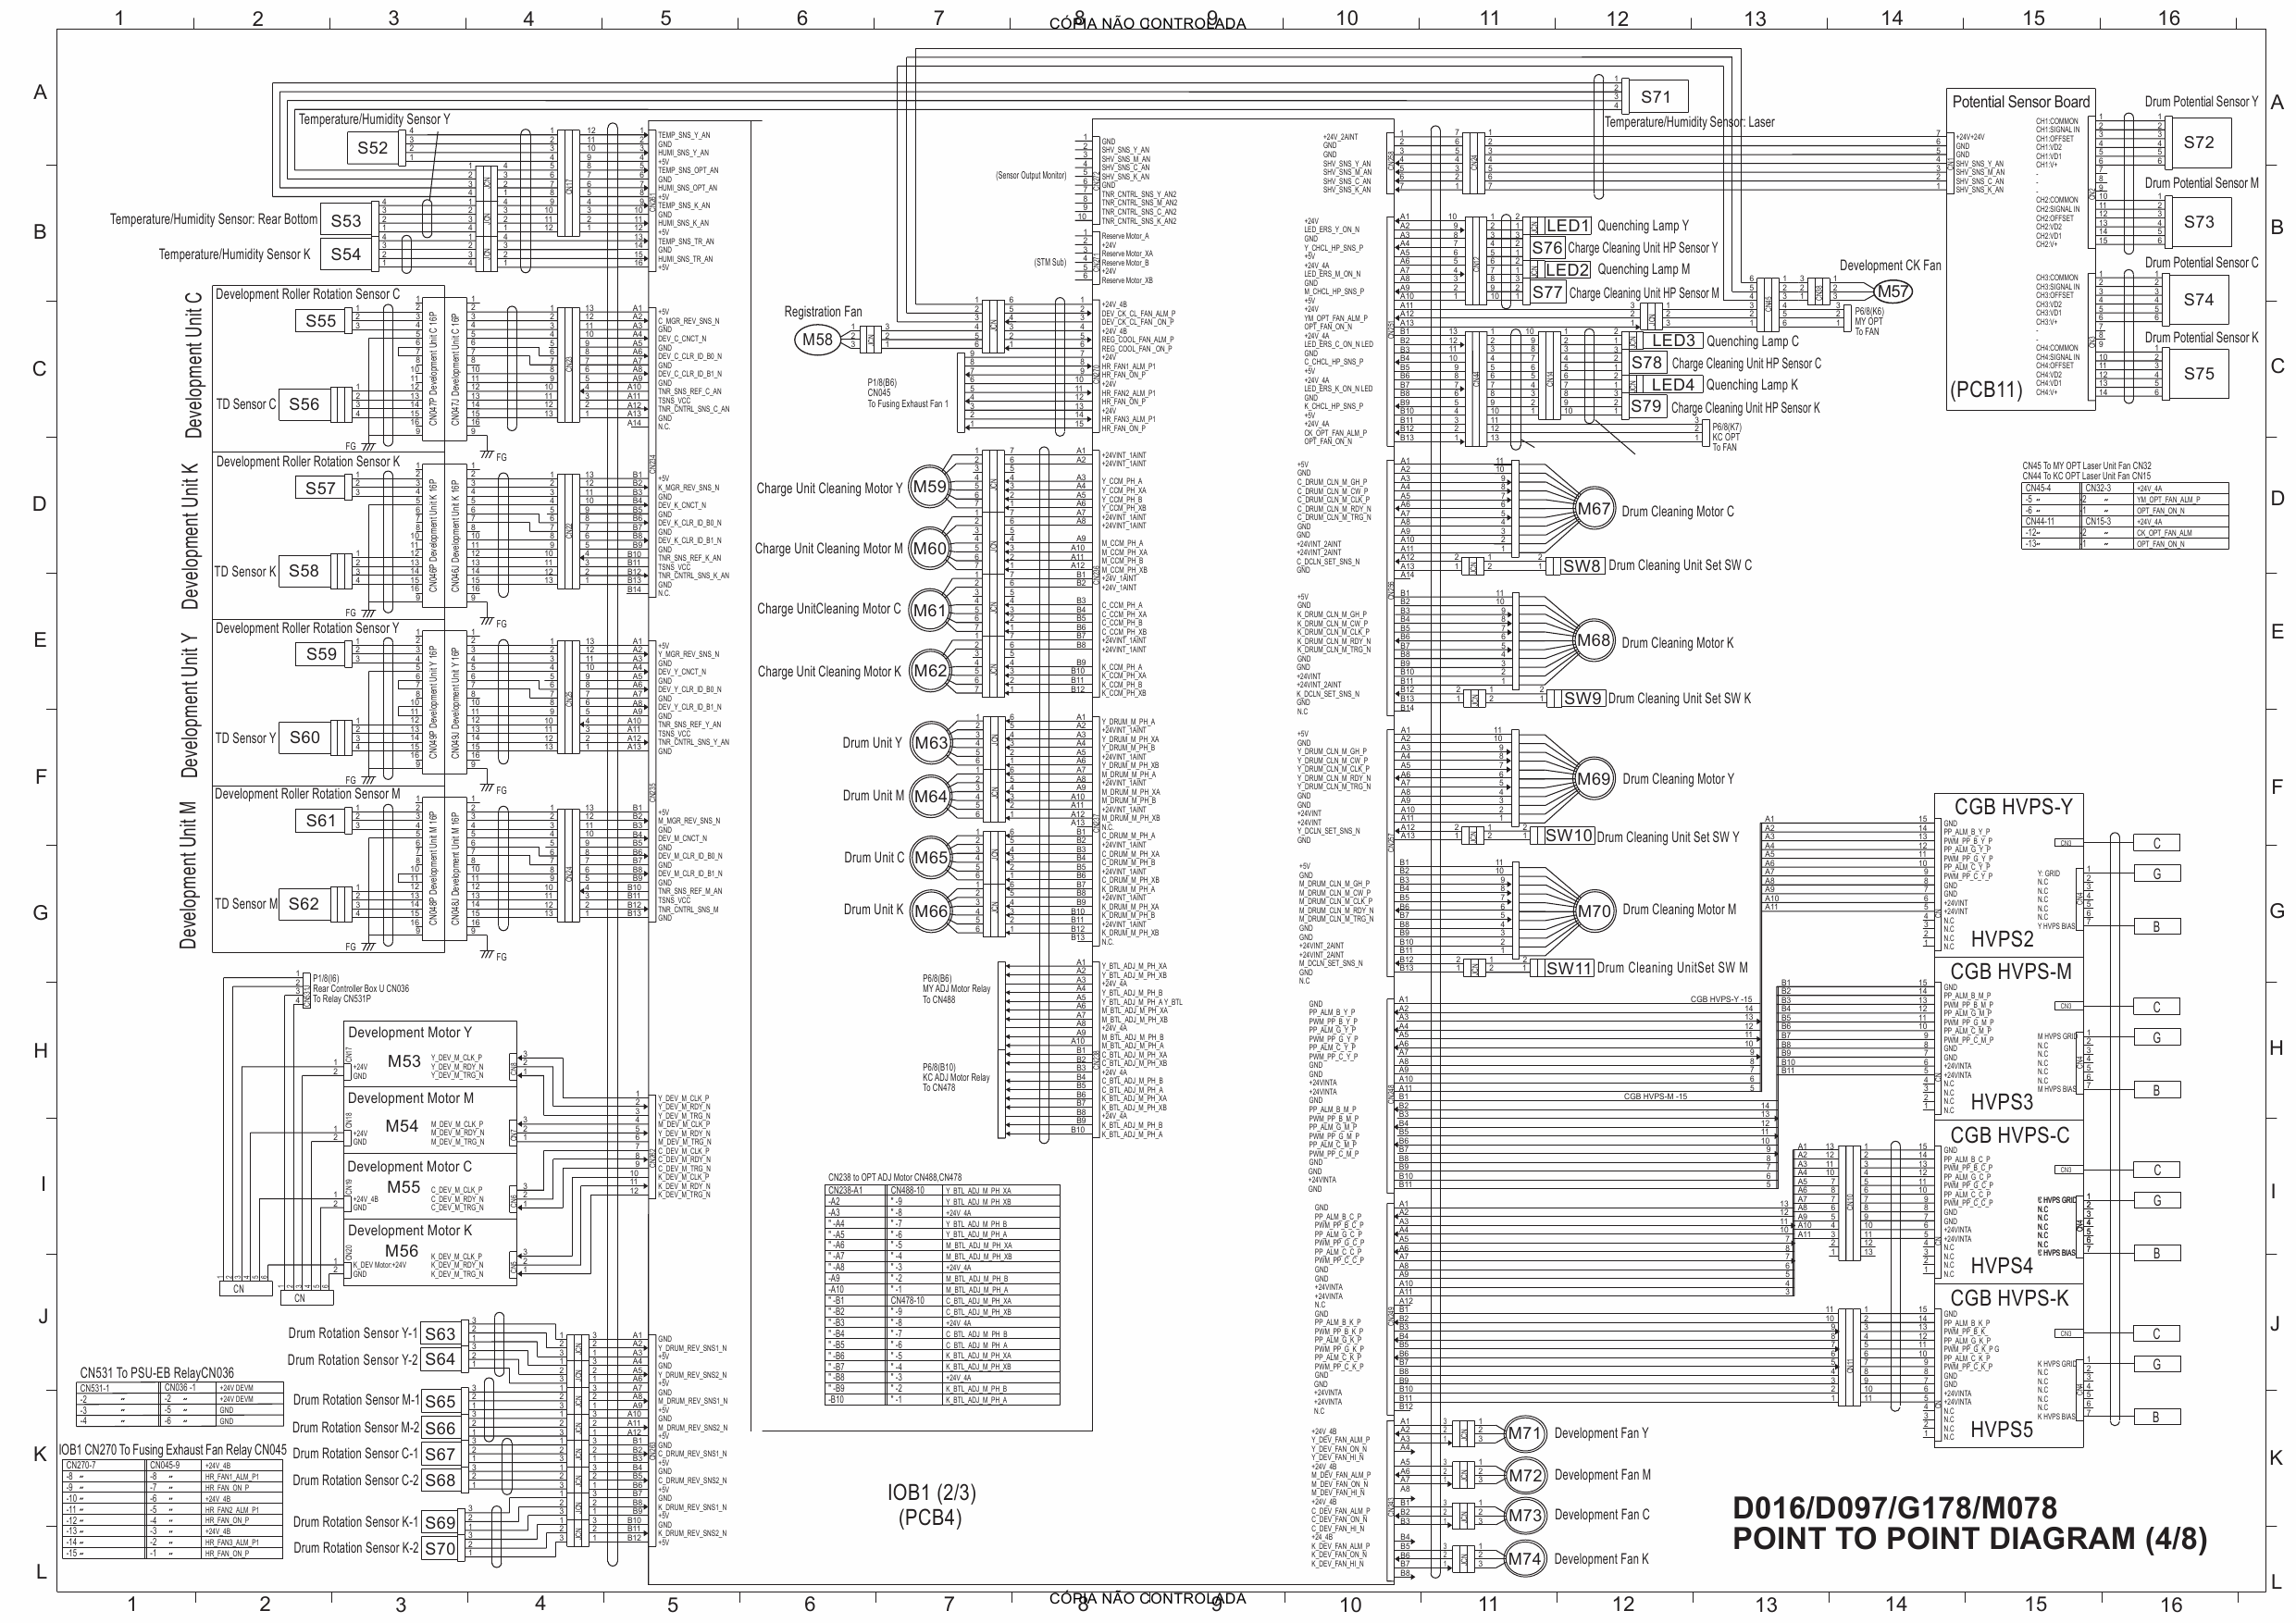 RICOH Aficio Pro-C720s C900s C900 C720 D016 D097 G178 M078 Circuit Diagram-4